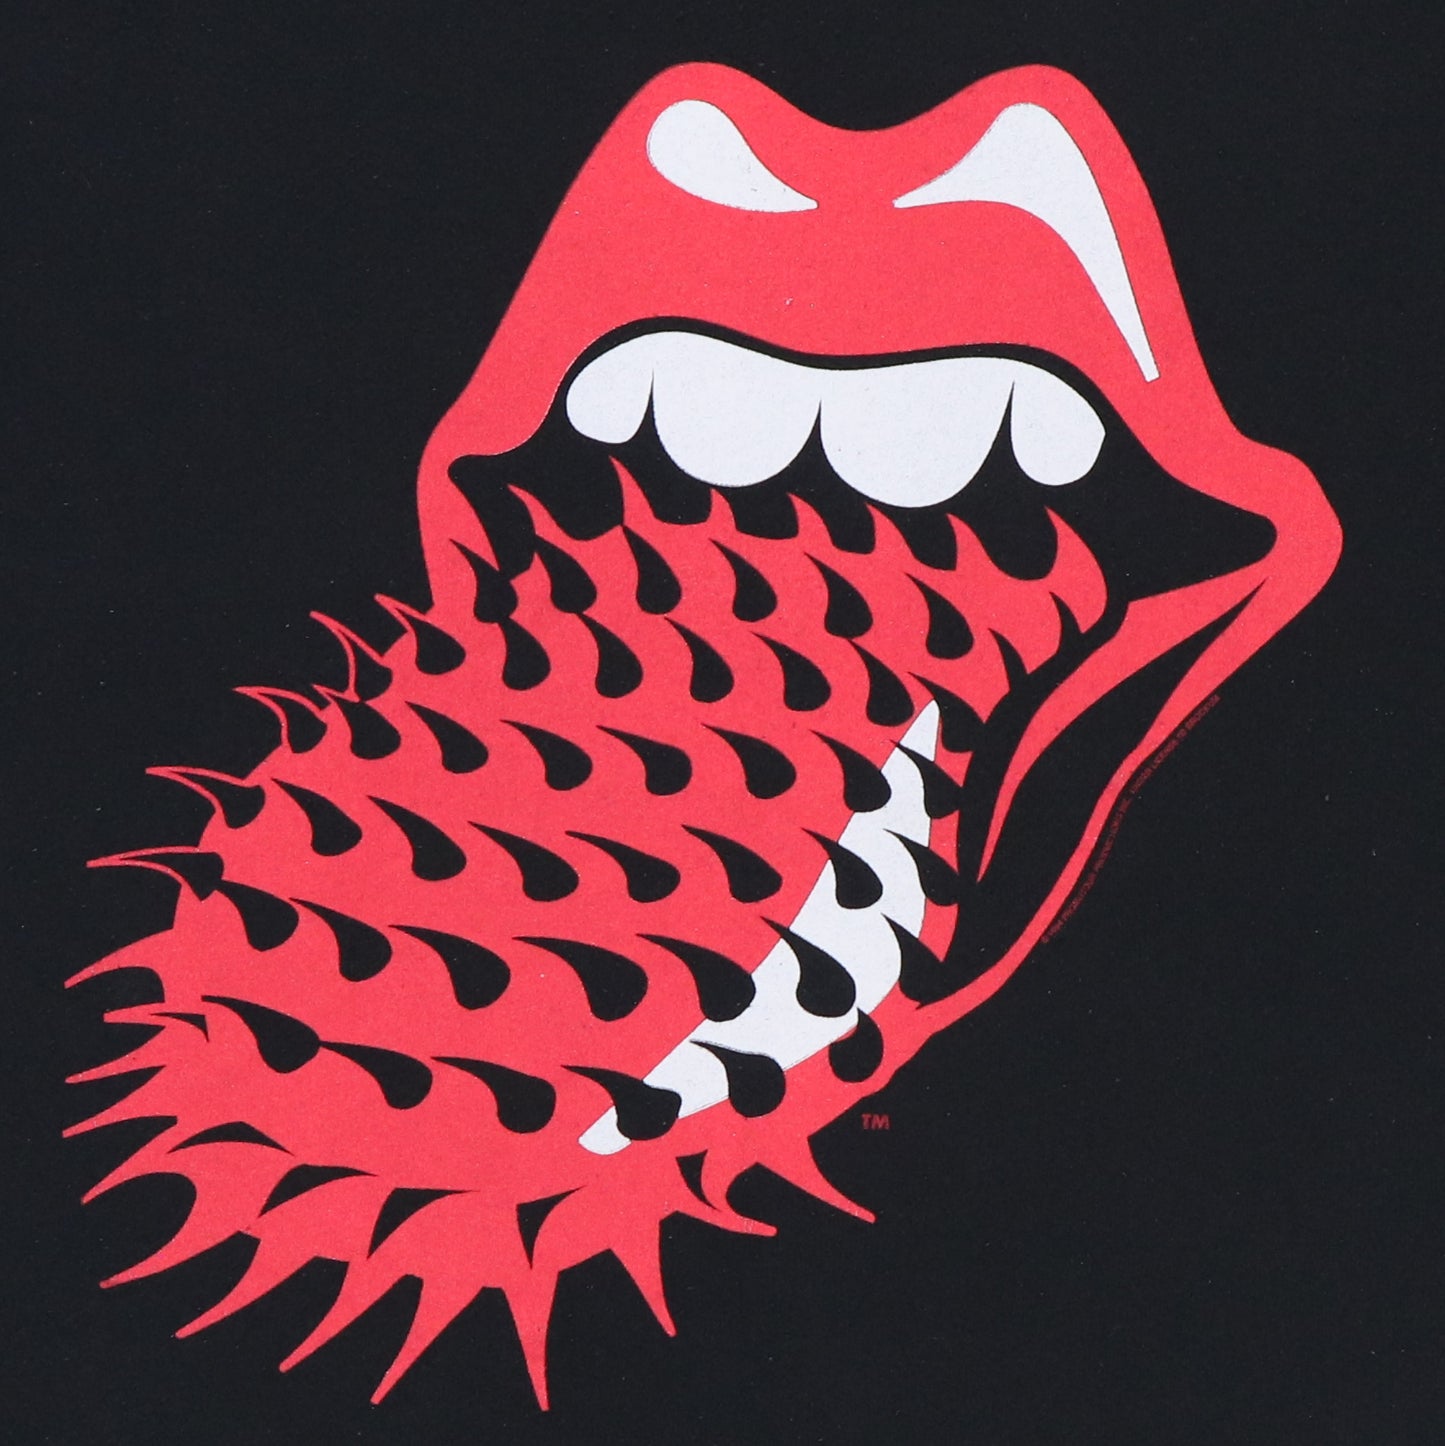 1994 Rolling Stones Voodoo Lounge Sweatshirt